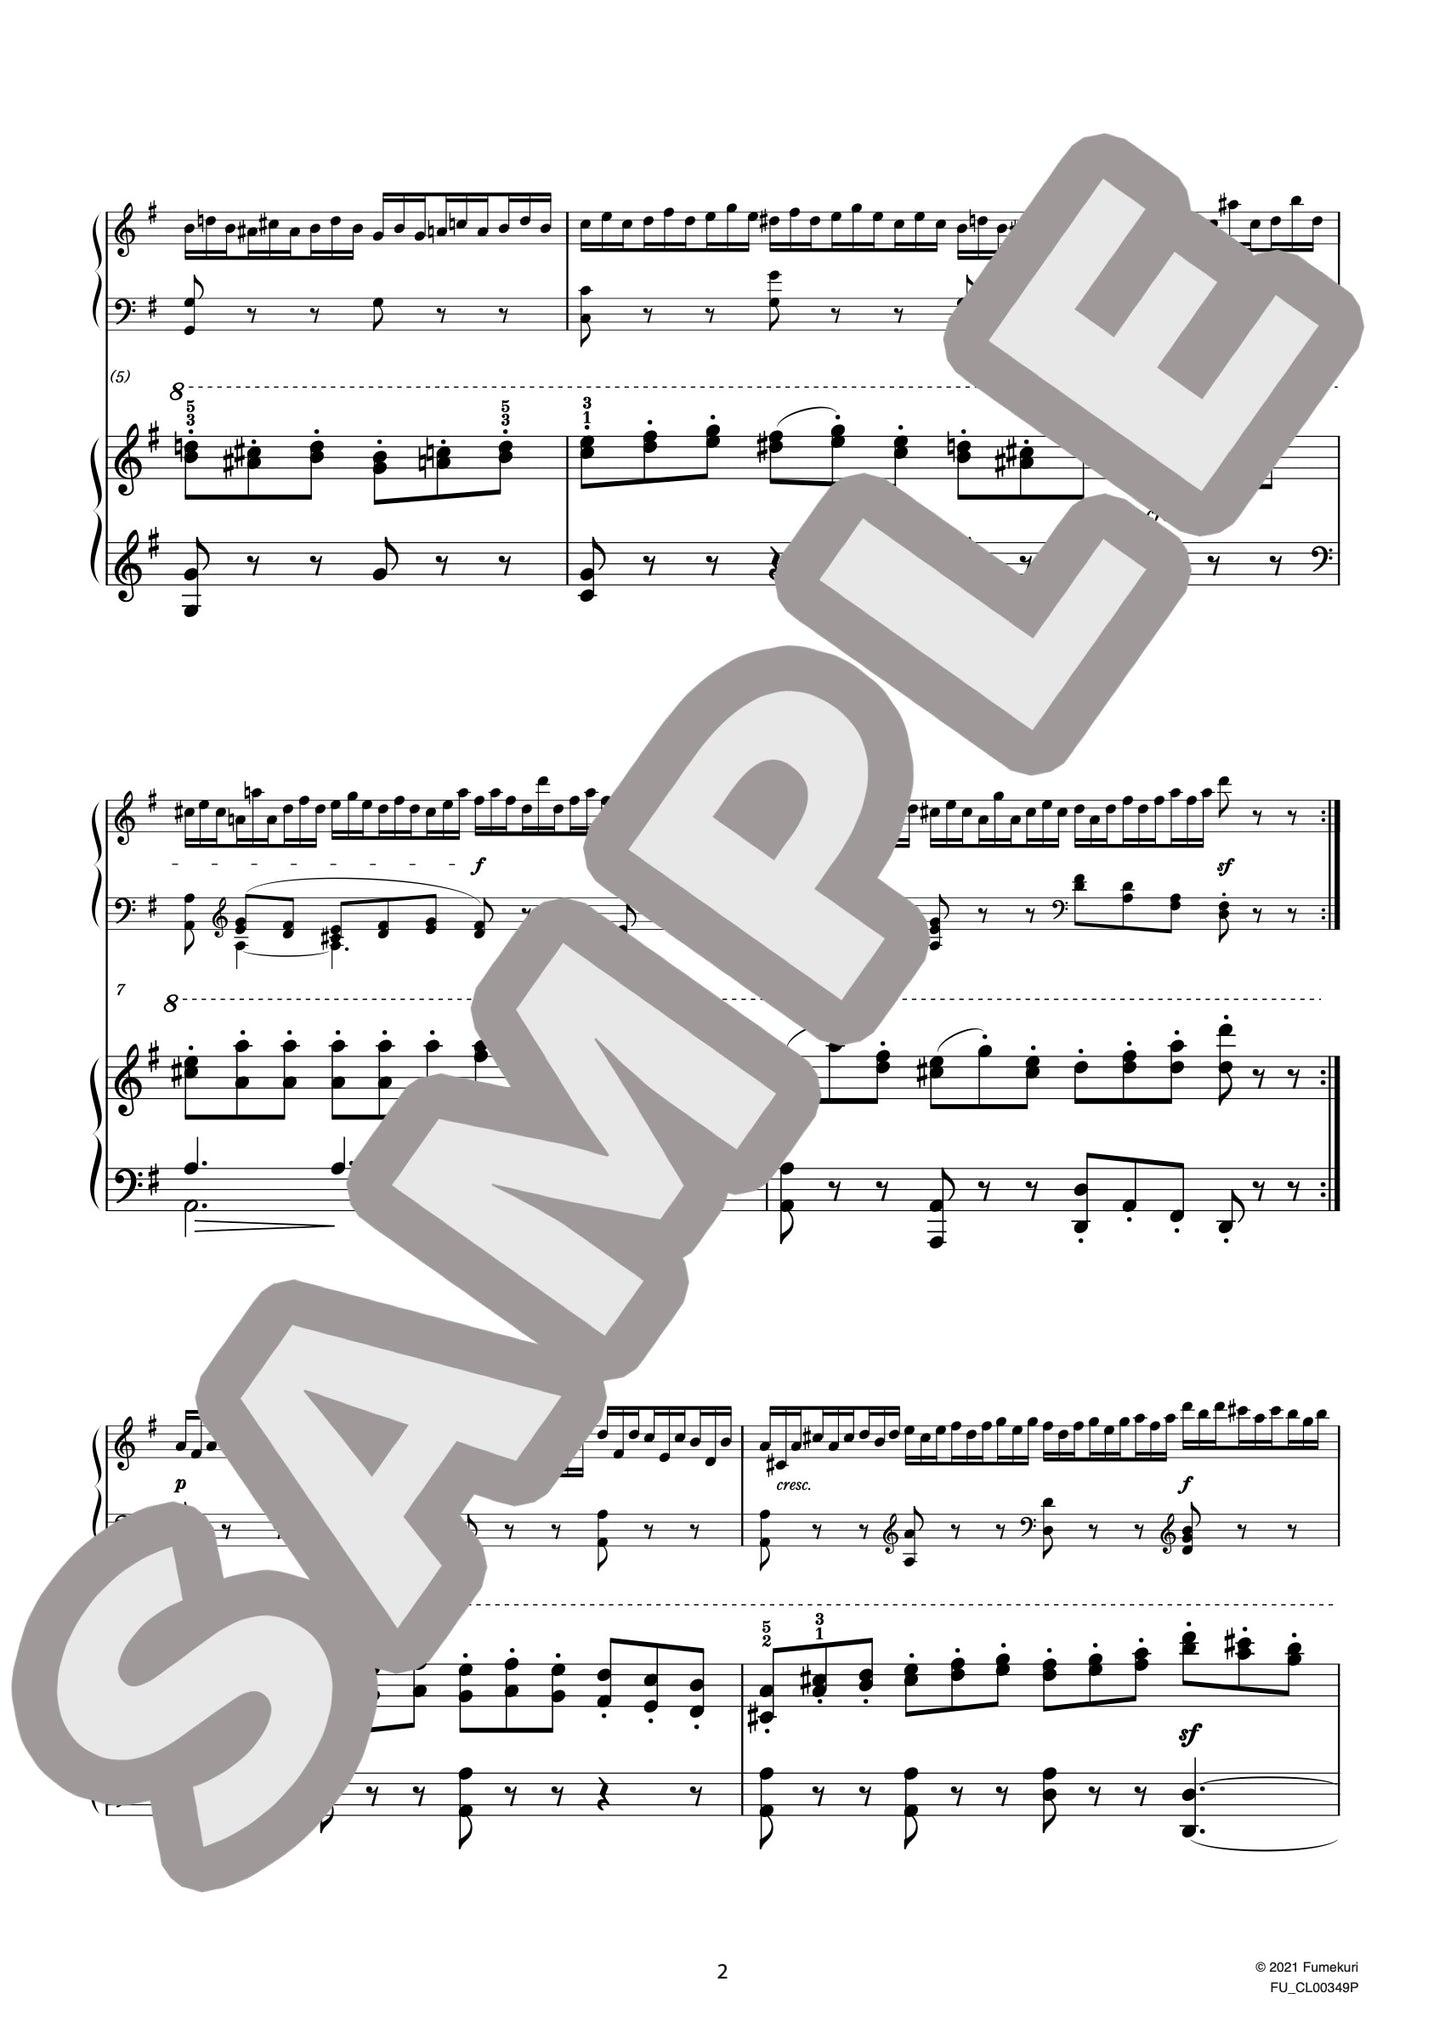 2台のピアノのための速度練習曲（40番練習曲）作品299b 第16番（CZERNY) / クラシック・オリジナル楽曲【中上級】